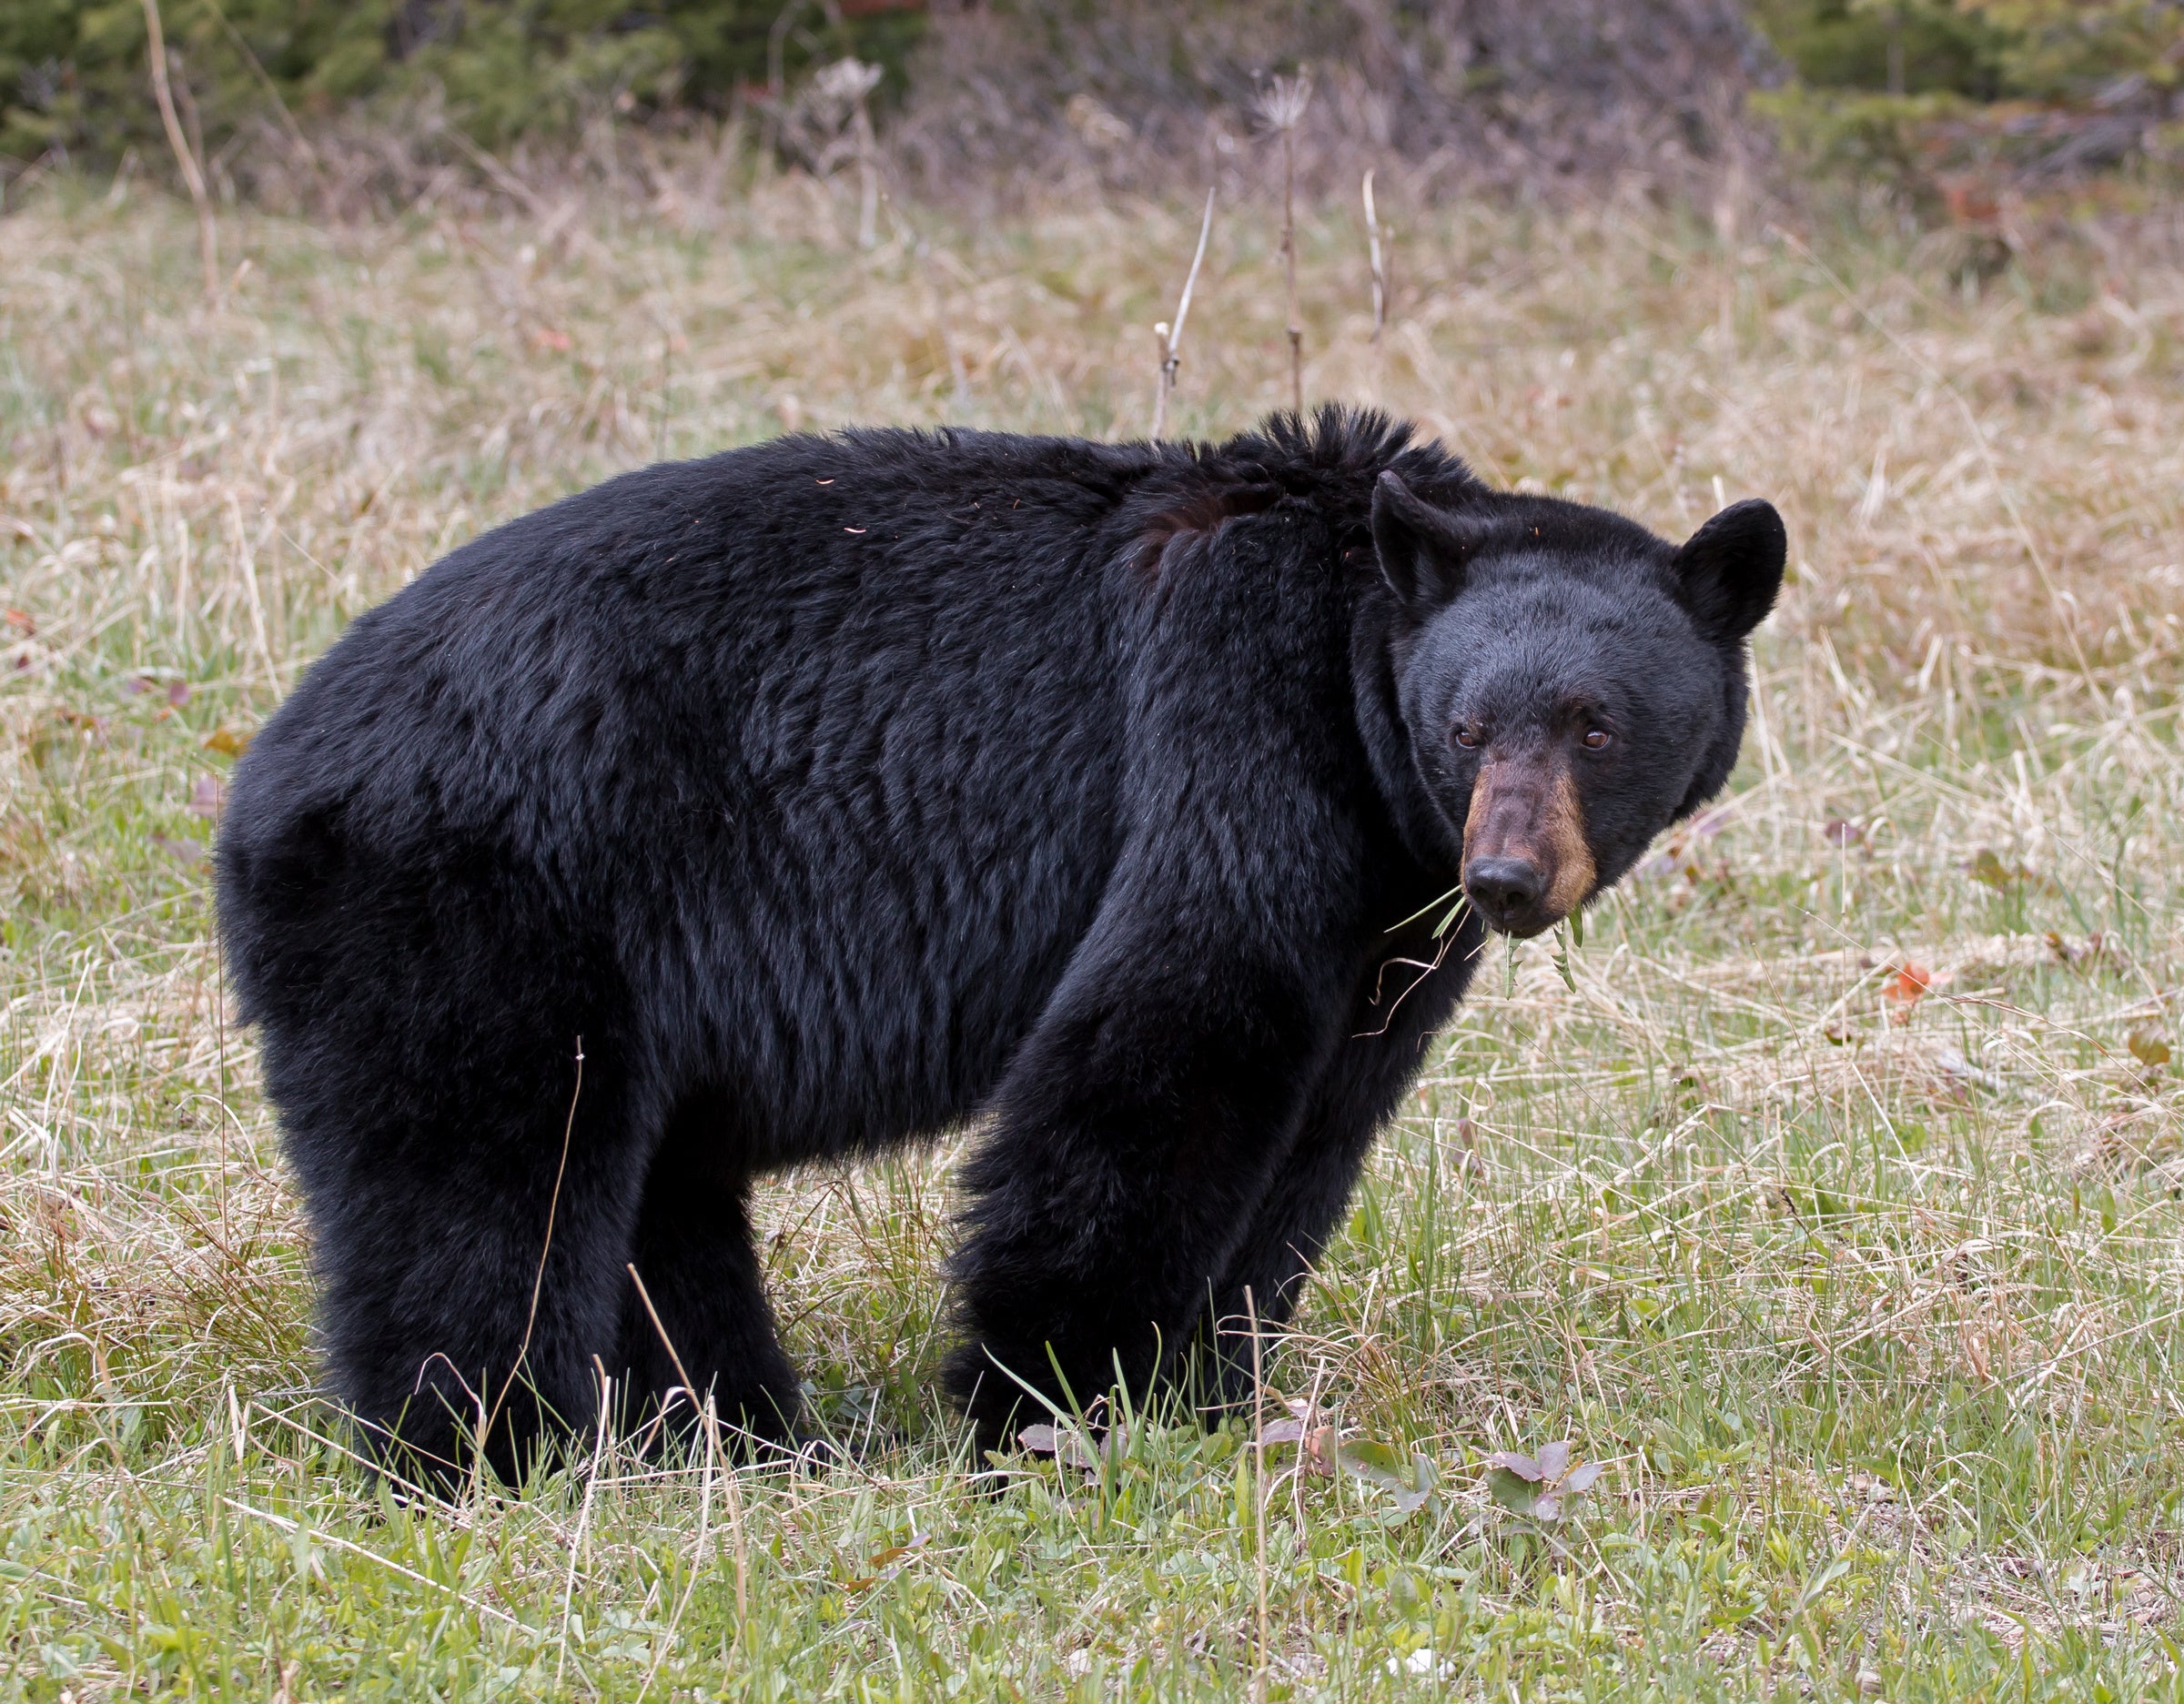 a large American black bear feeding in a grassy meadow